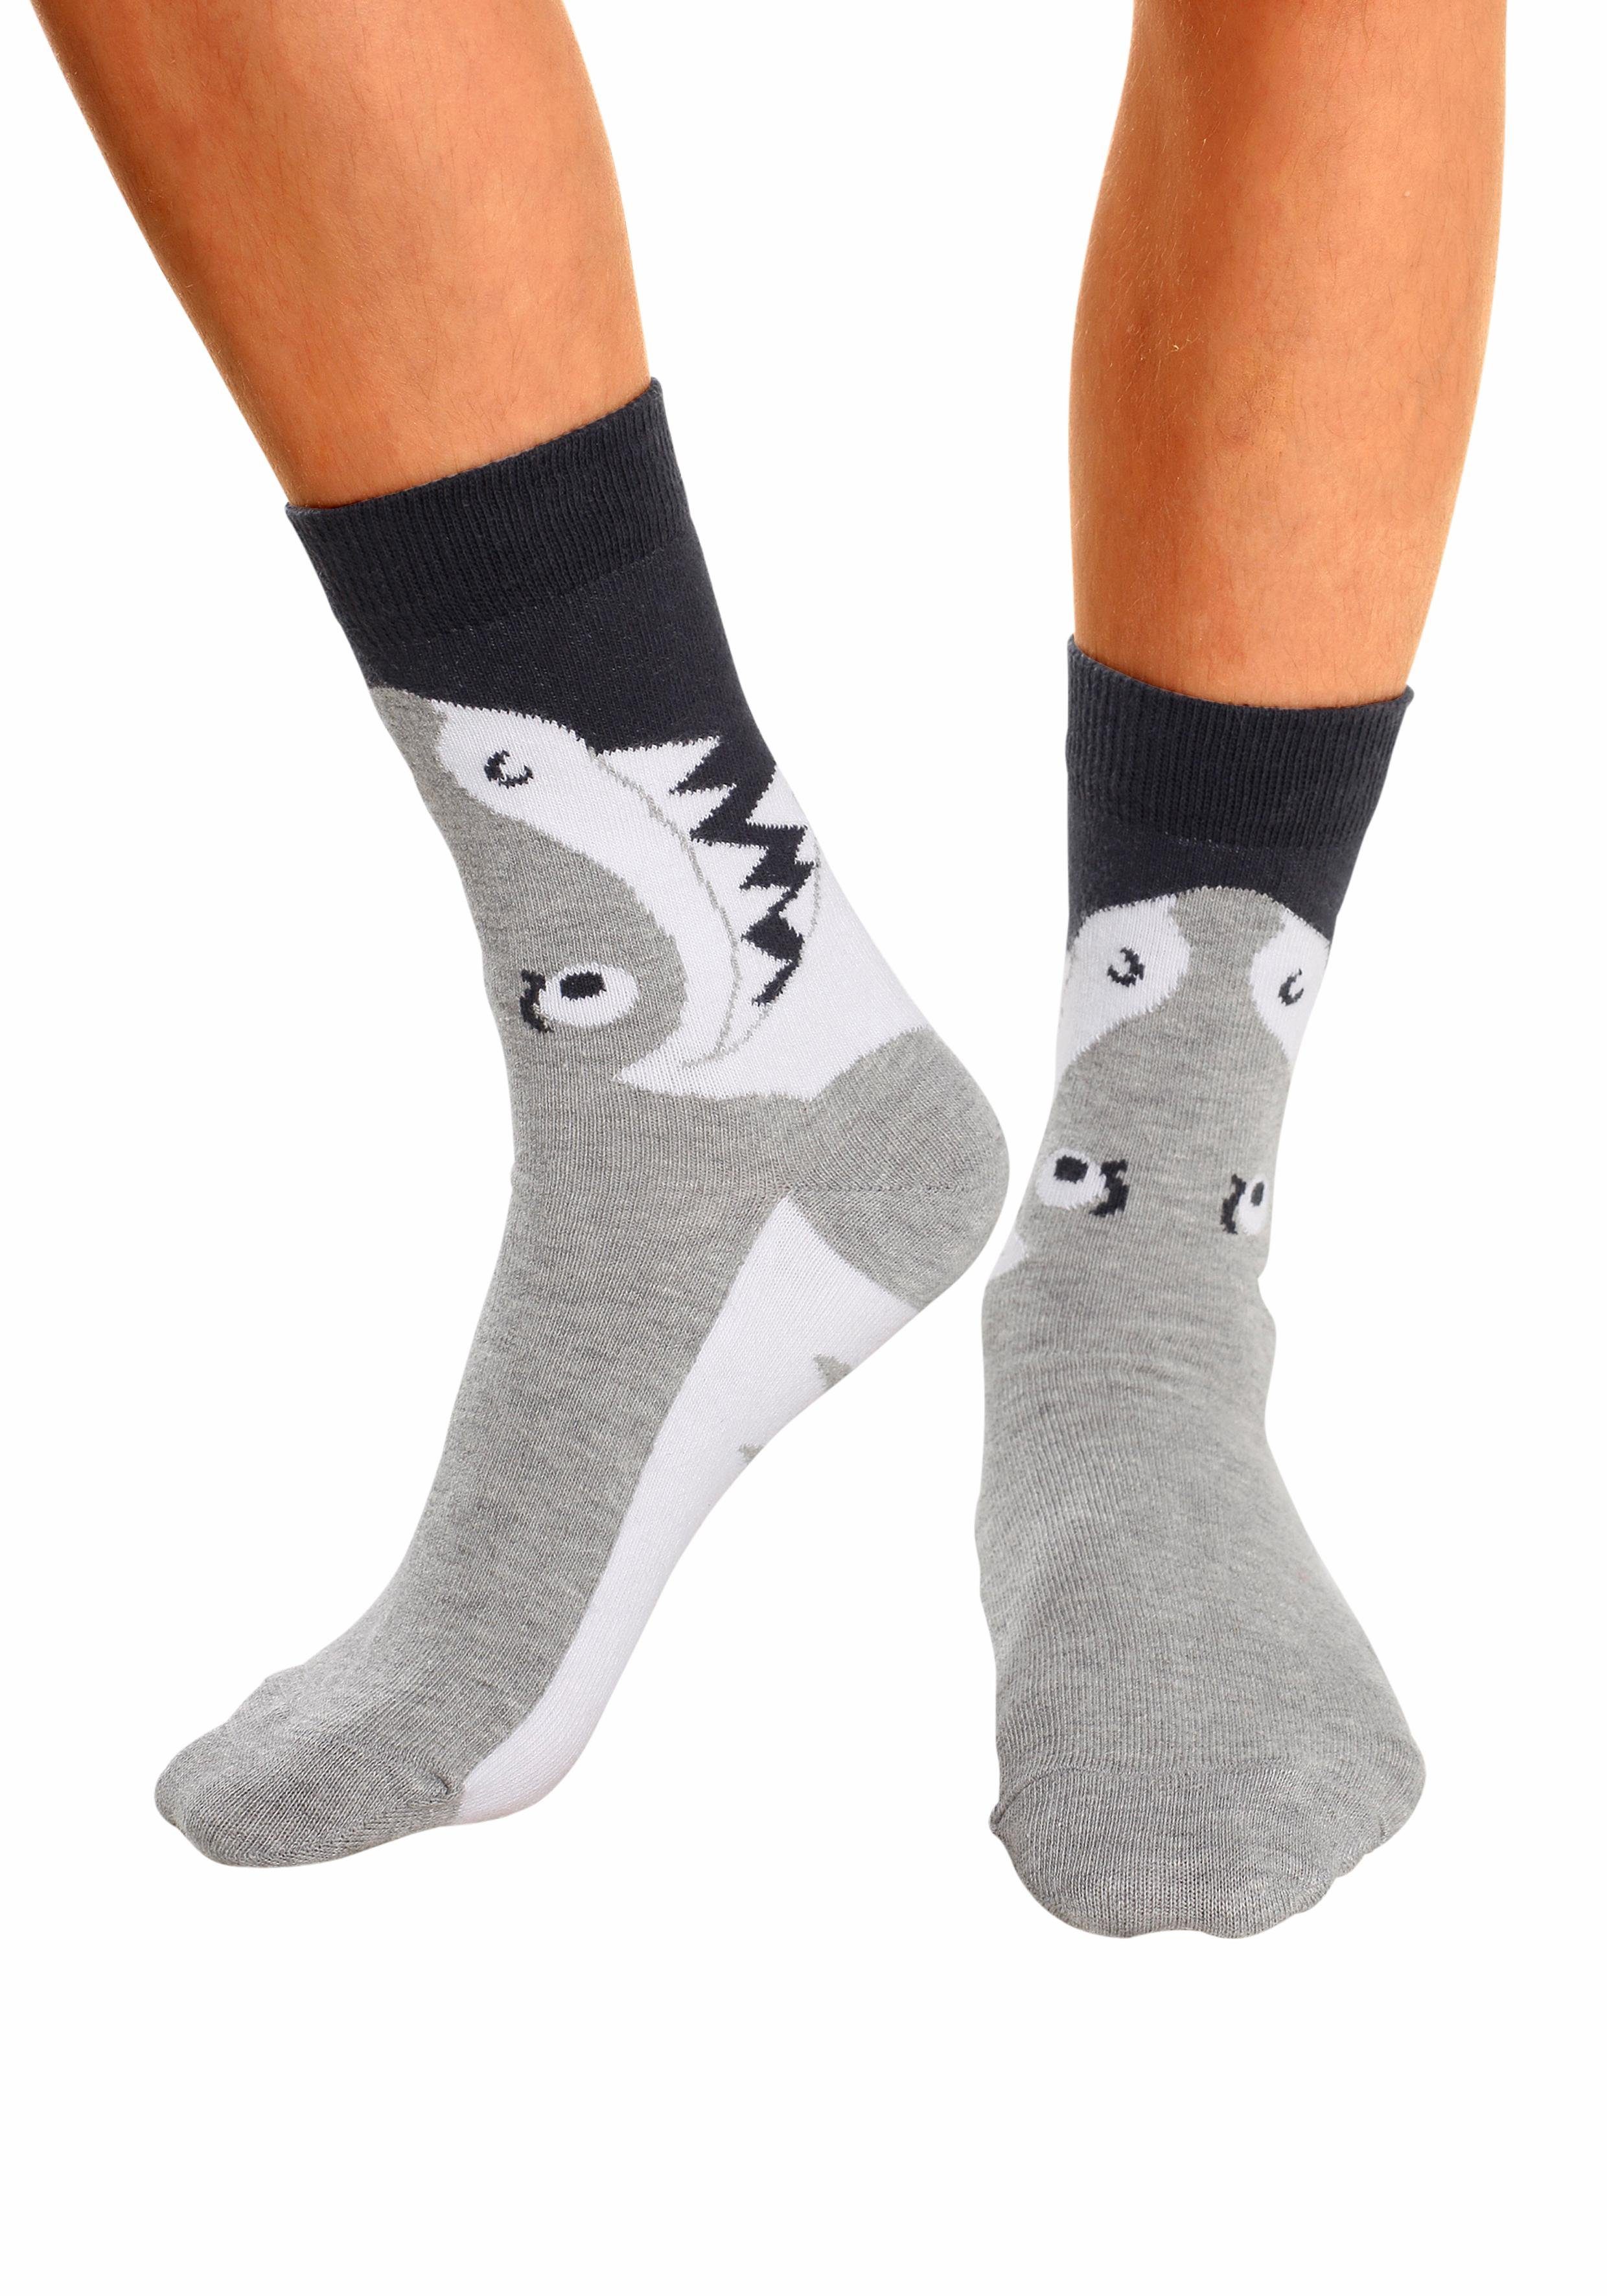 Tiermotiven mit (5-Paar) Socken